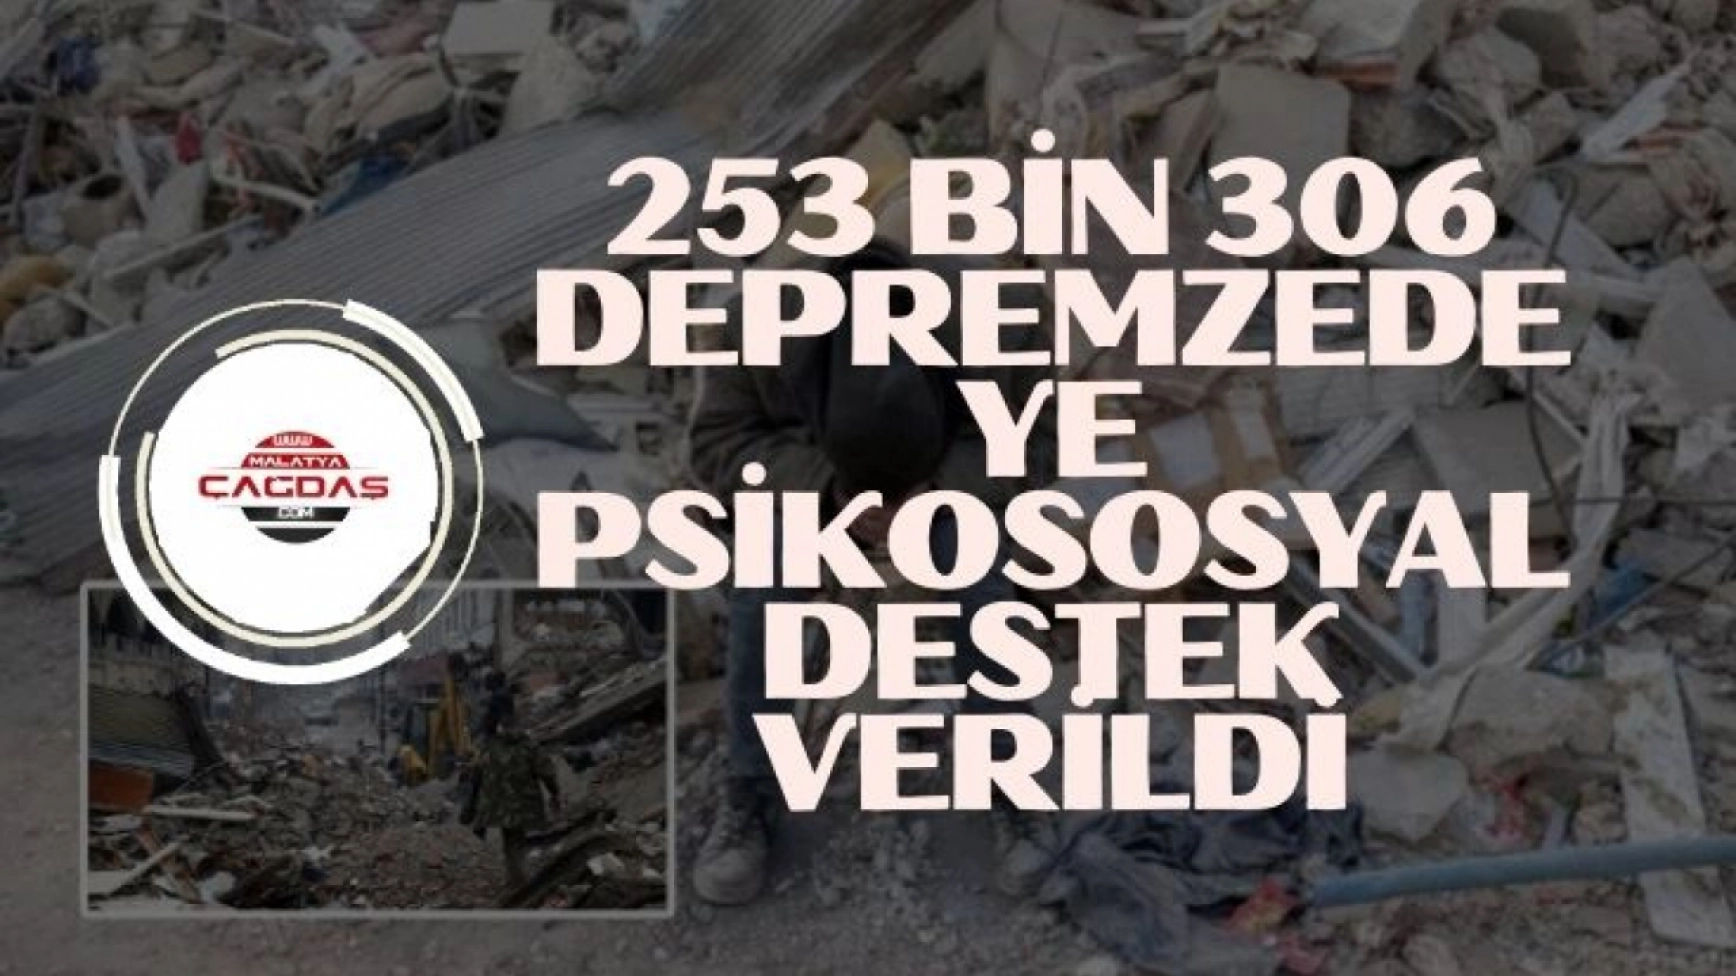 253 bin 306 depremzedeye psikososyal destek verildi